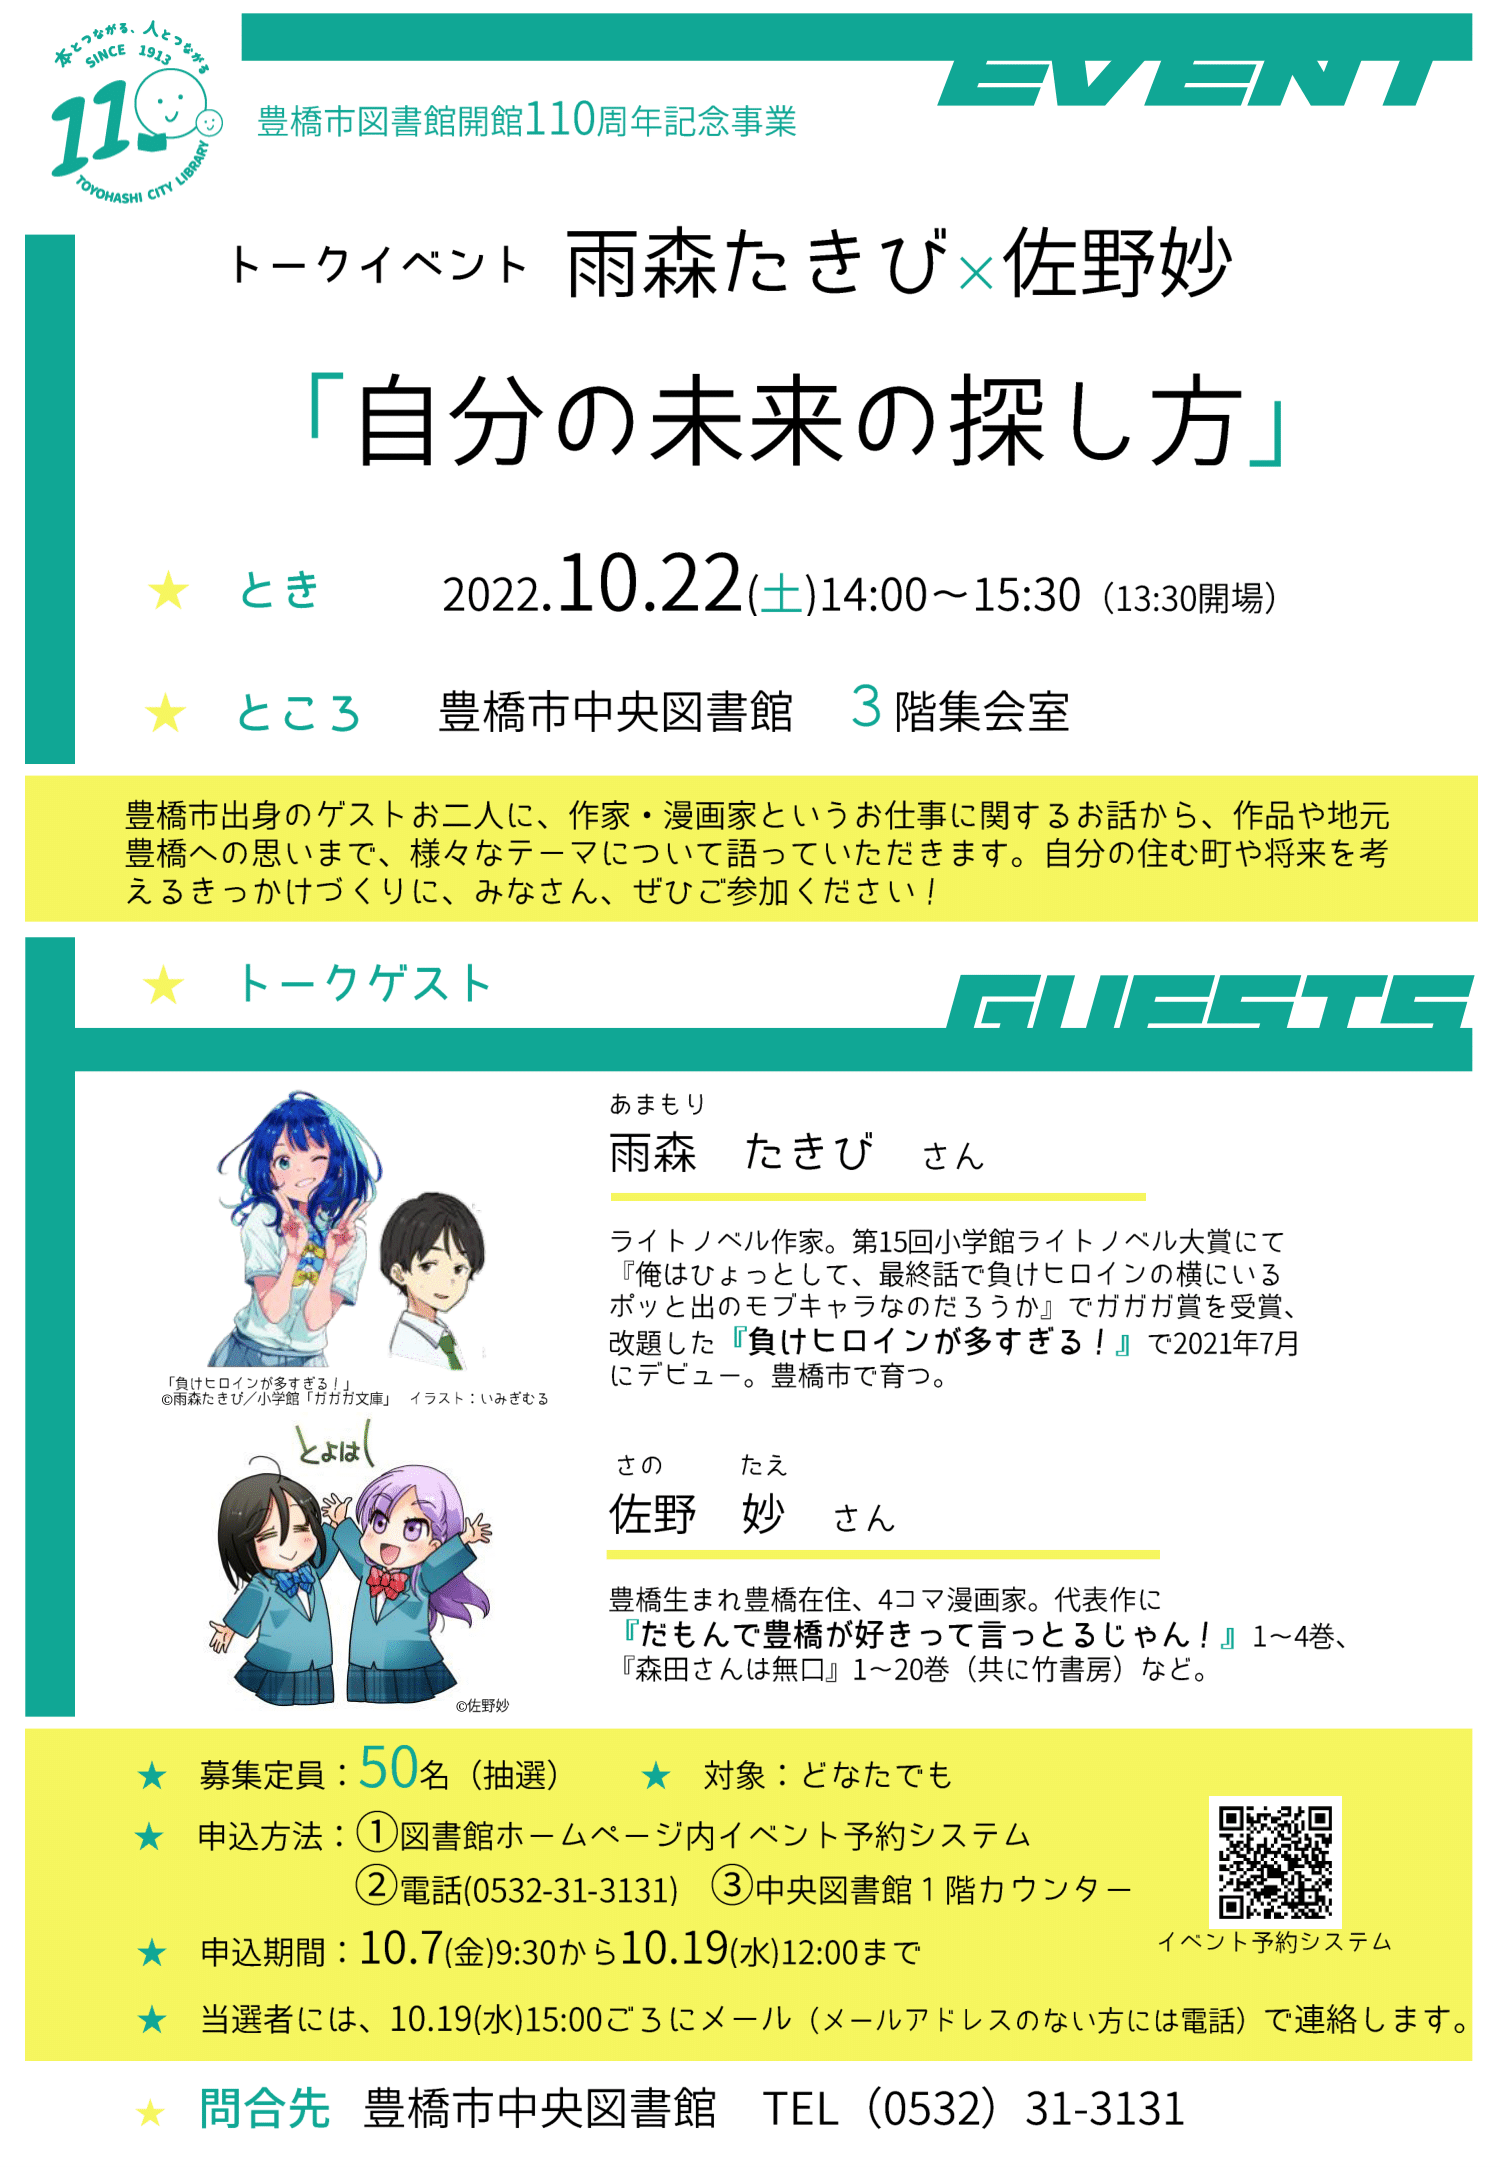 雨森たきびさんイベントポスター-1.png